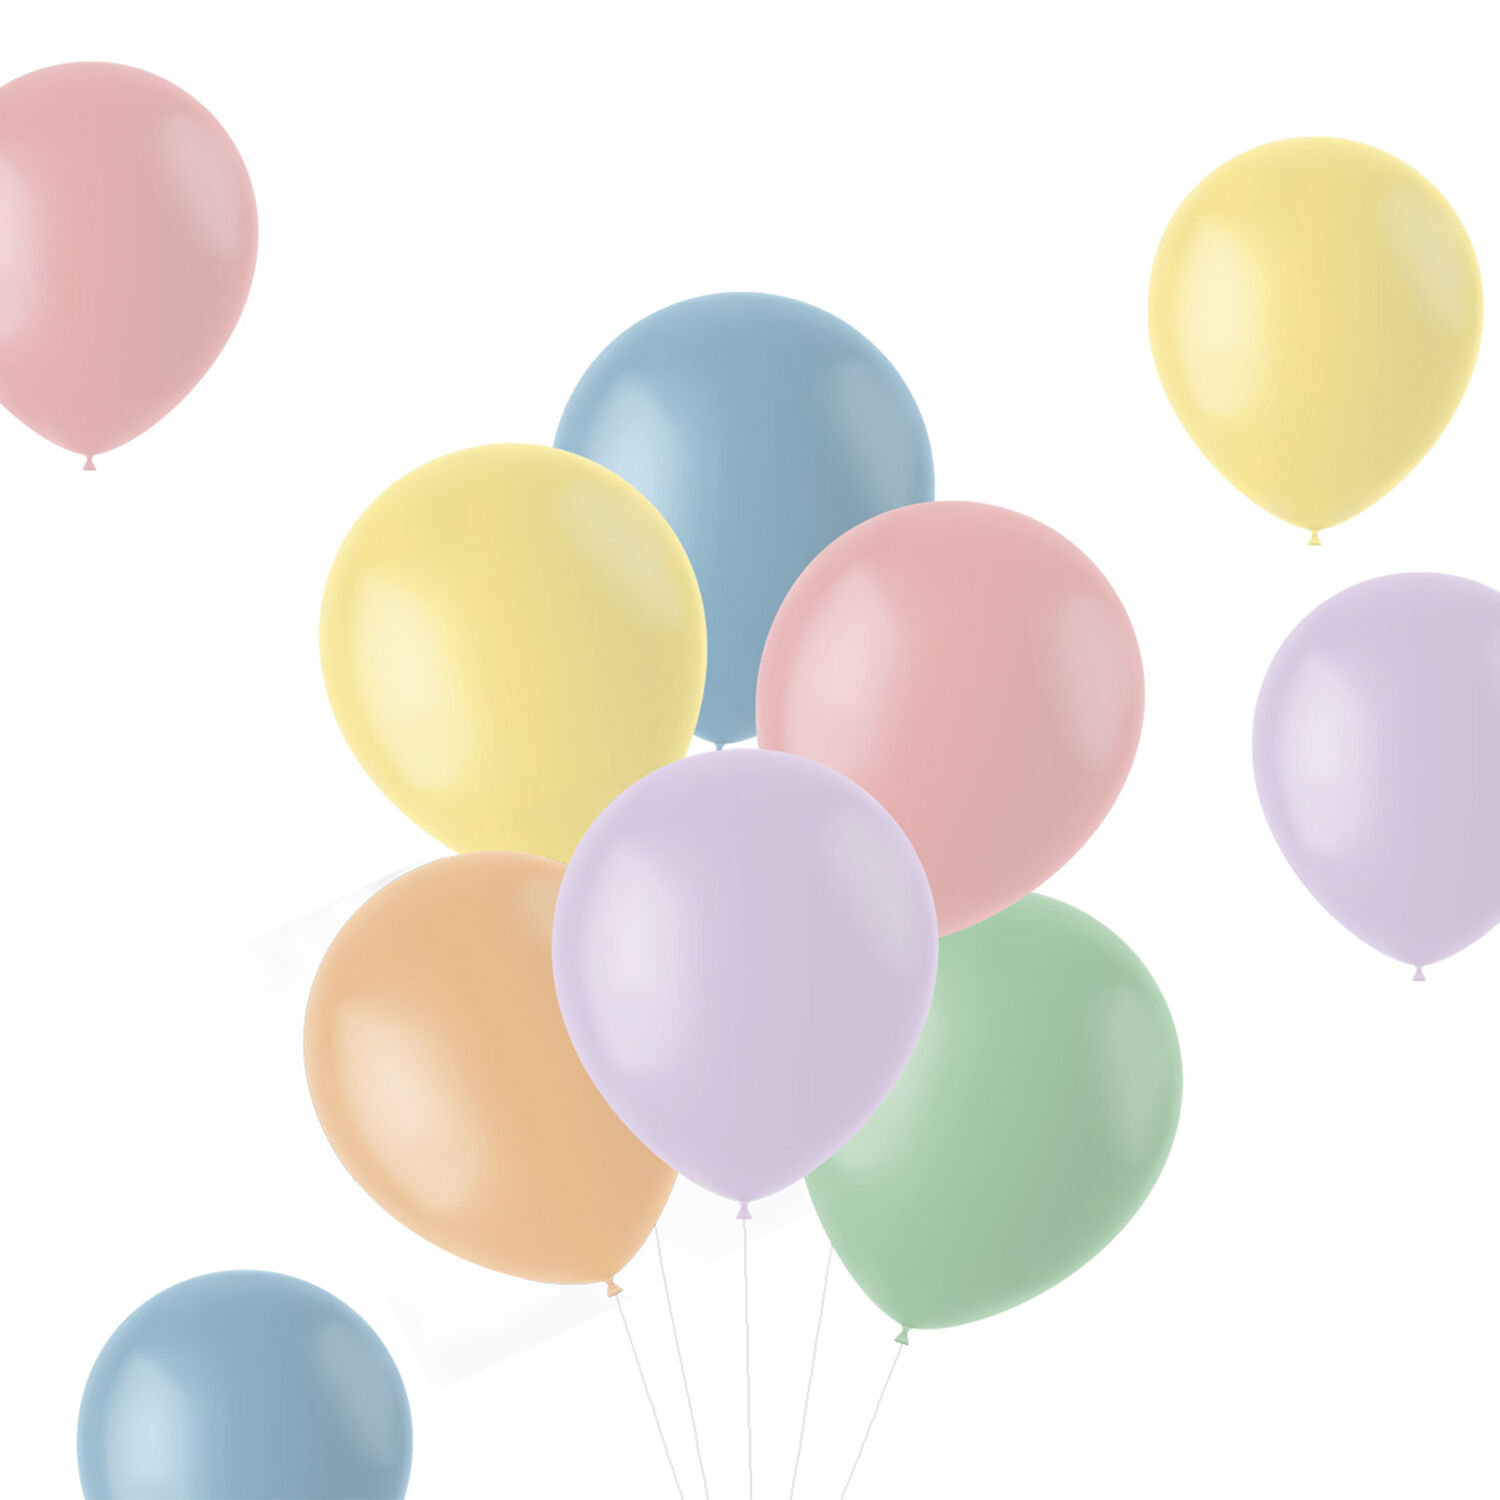 NEU Latex-Luftballons matt, 33cm, Pastelltöne bunt gemischt, 10 Stück